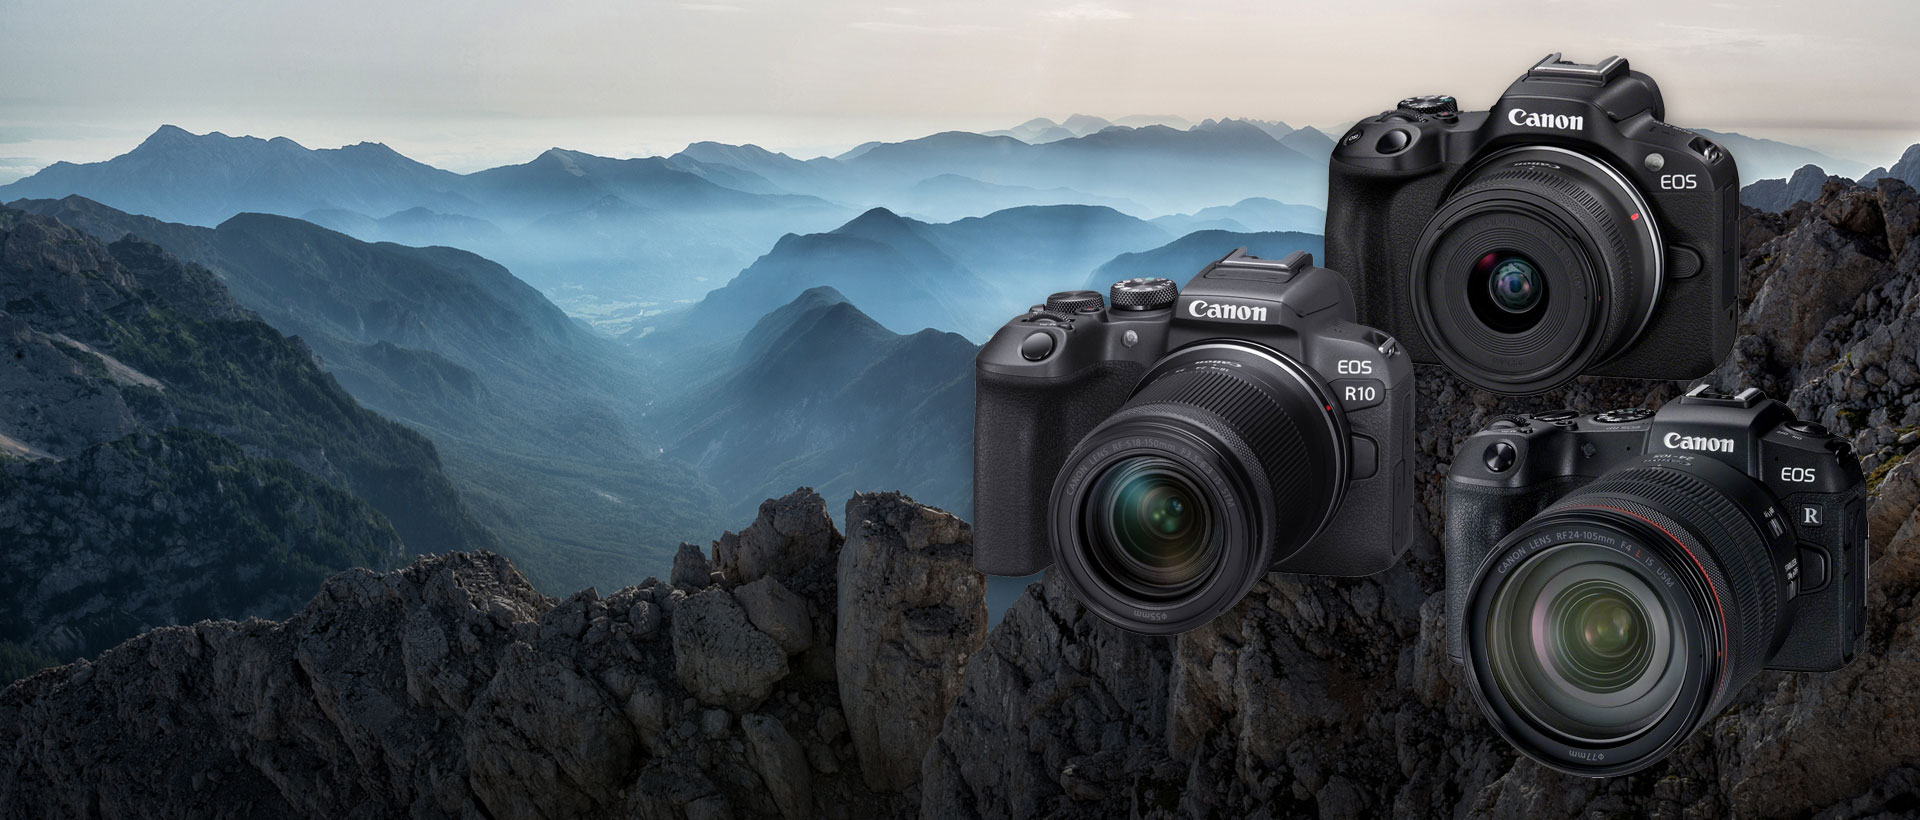 Canon EOS RP, R10 und R50 – Drei Top-Kameras für Hobbyfotografen